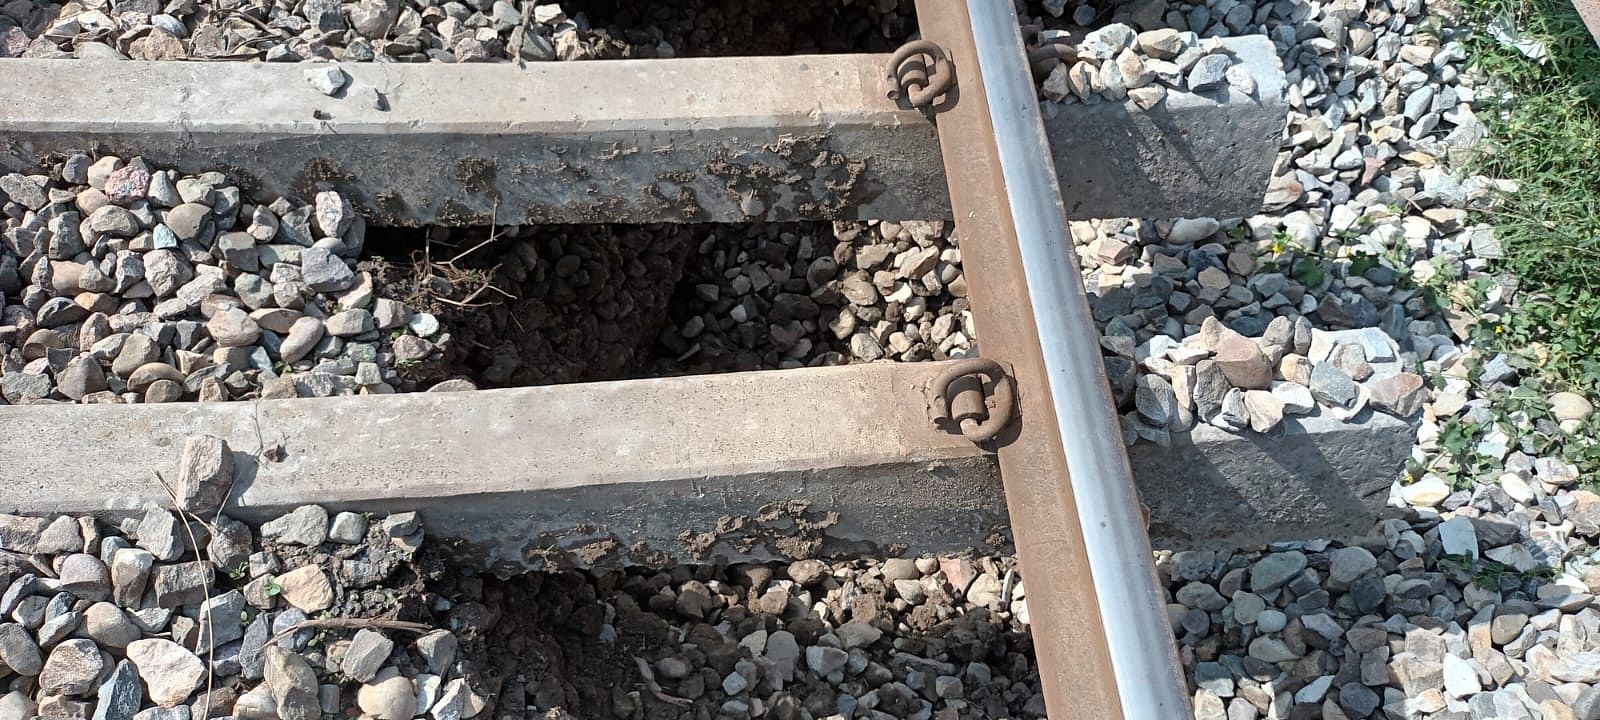 शाहजहांपुर में रेलवे लाइन के नीचे से हटी मिट्टी और पत्थर